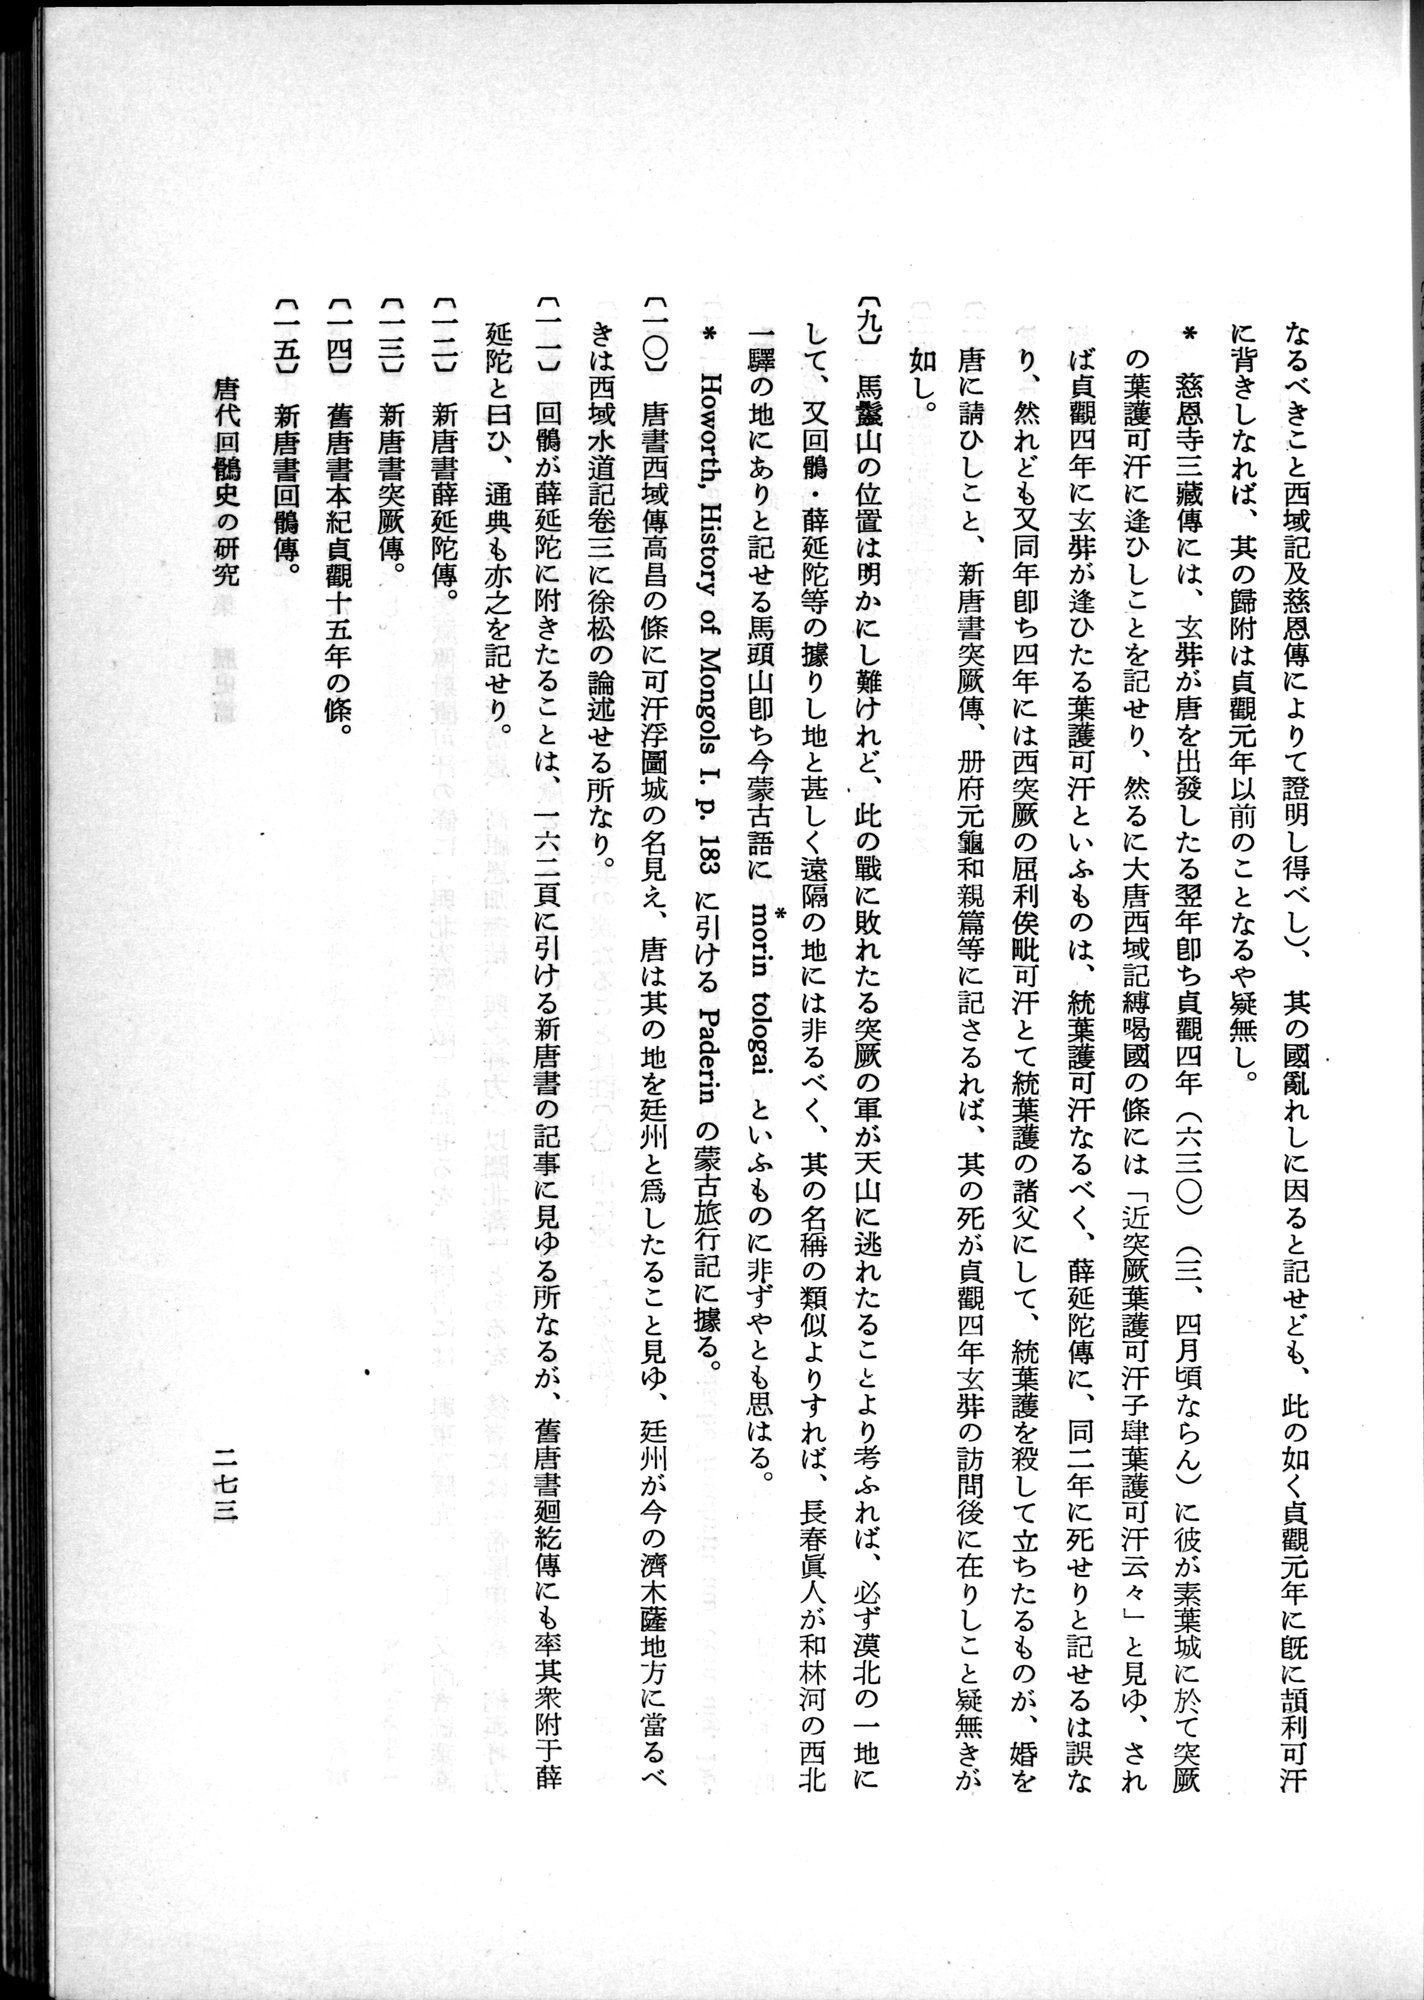 羽田博士史学論文集 : vol.1 / Page 311 (Grayscale High Resolution Image)